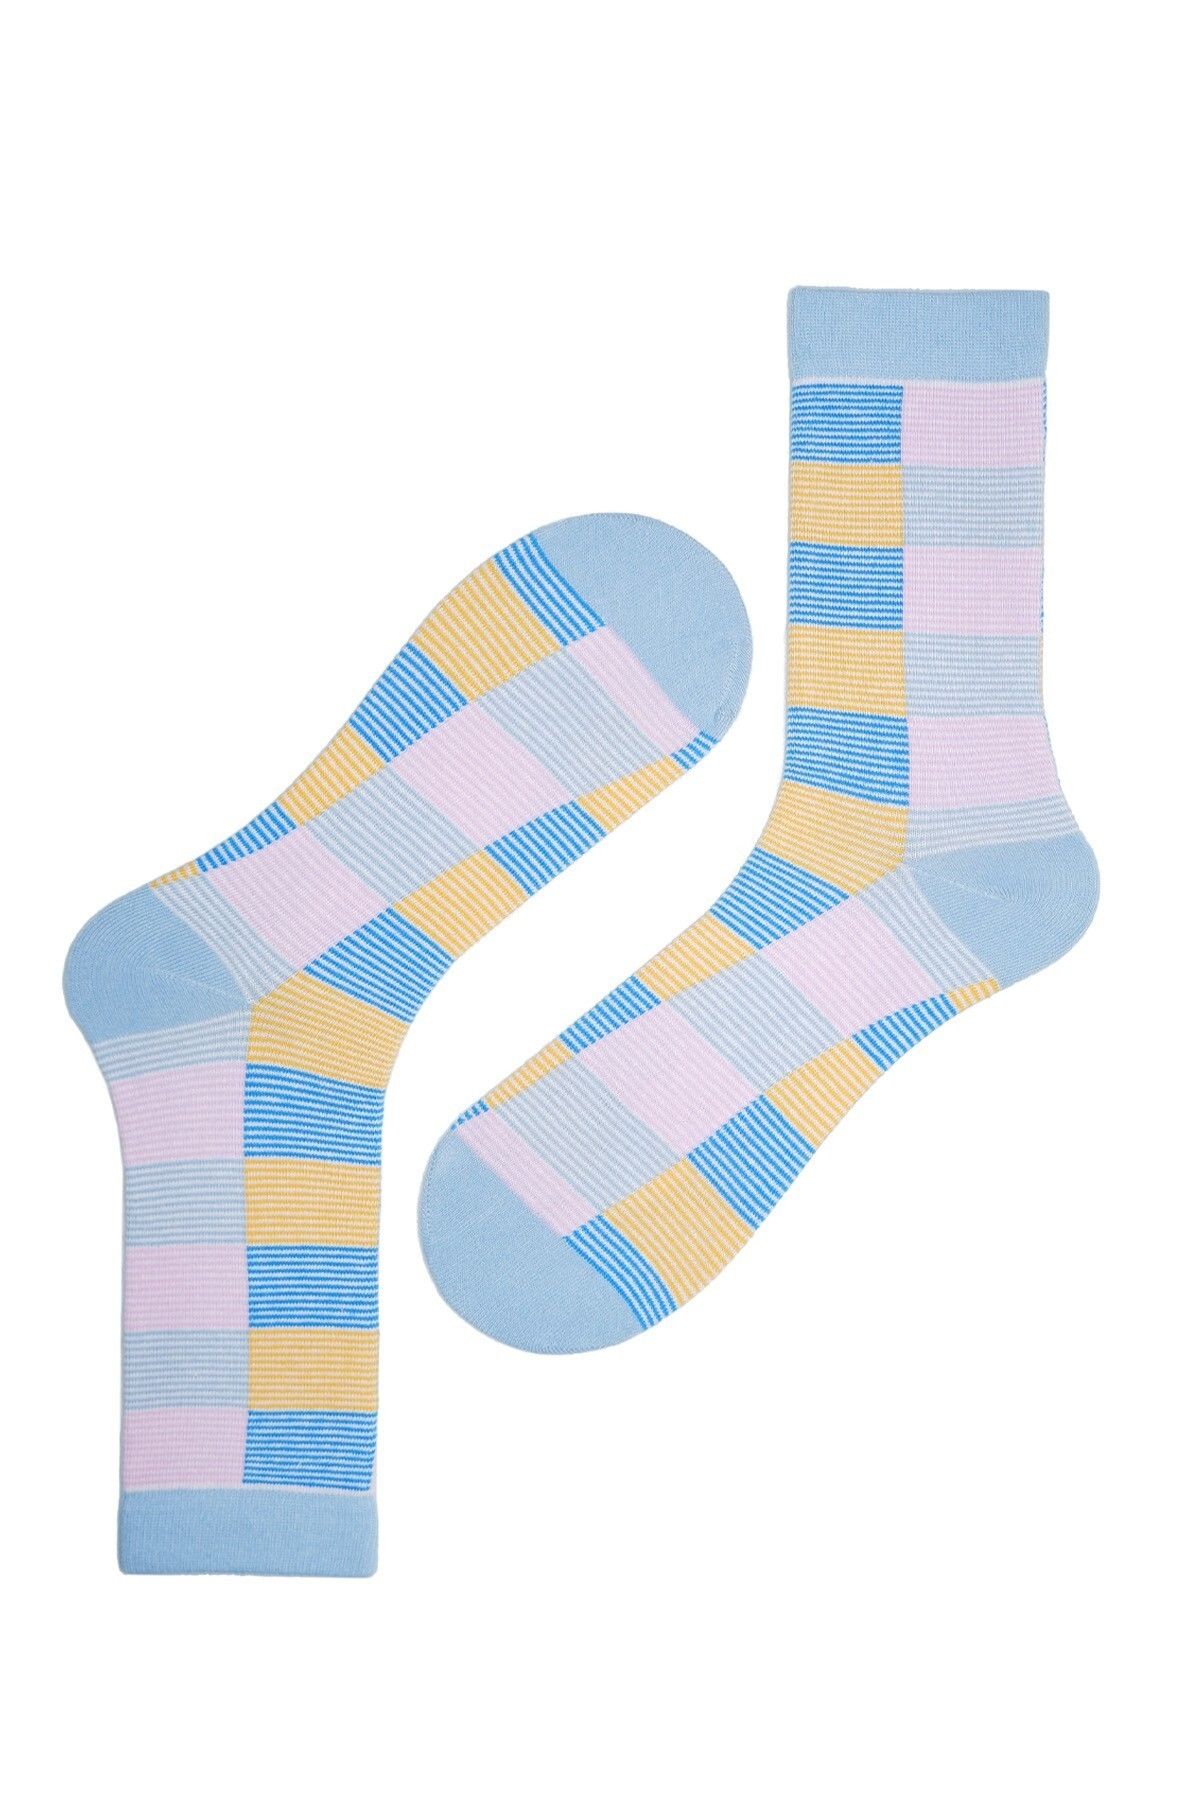 The Socks Company Desenli Çok Renkli Kadın Çorap 23kdcr267k